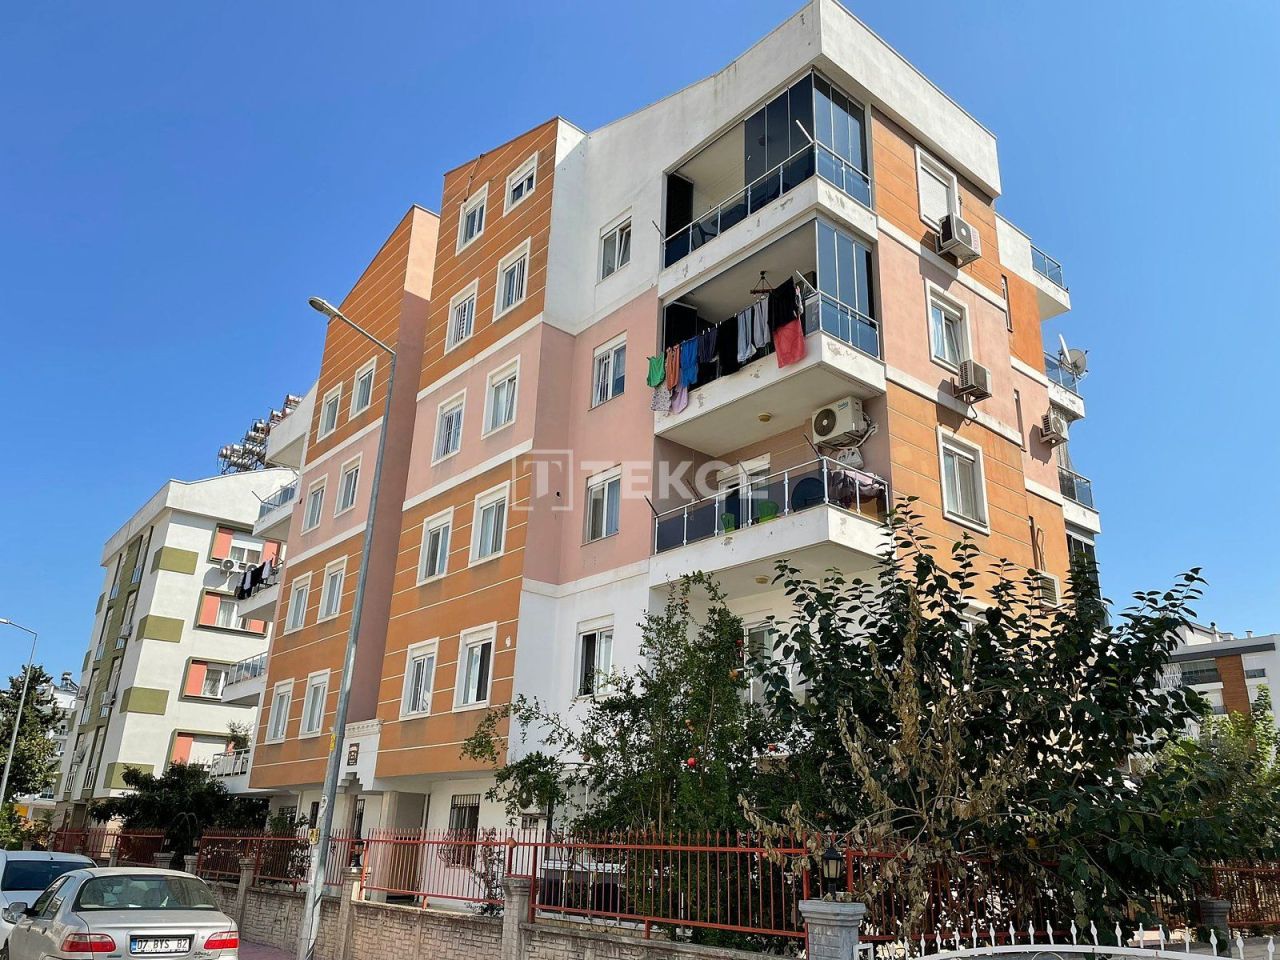 Апартаменты в Анталии, Турция, 85 м2 - фото 1